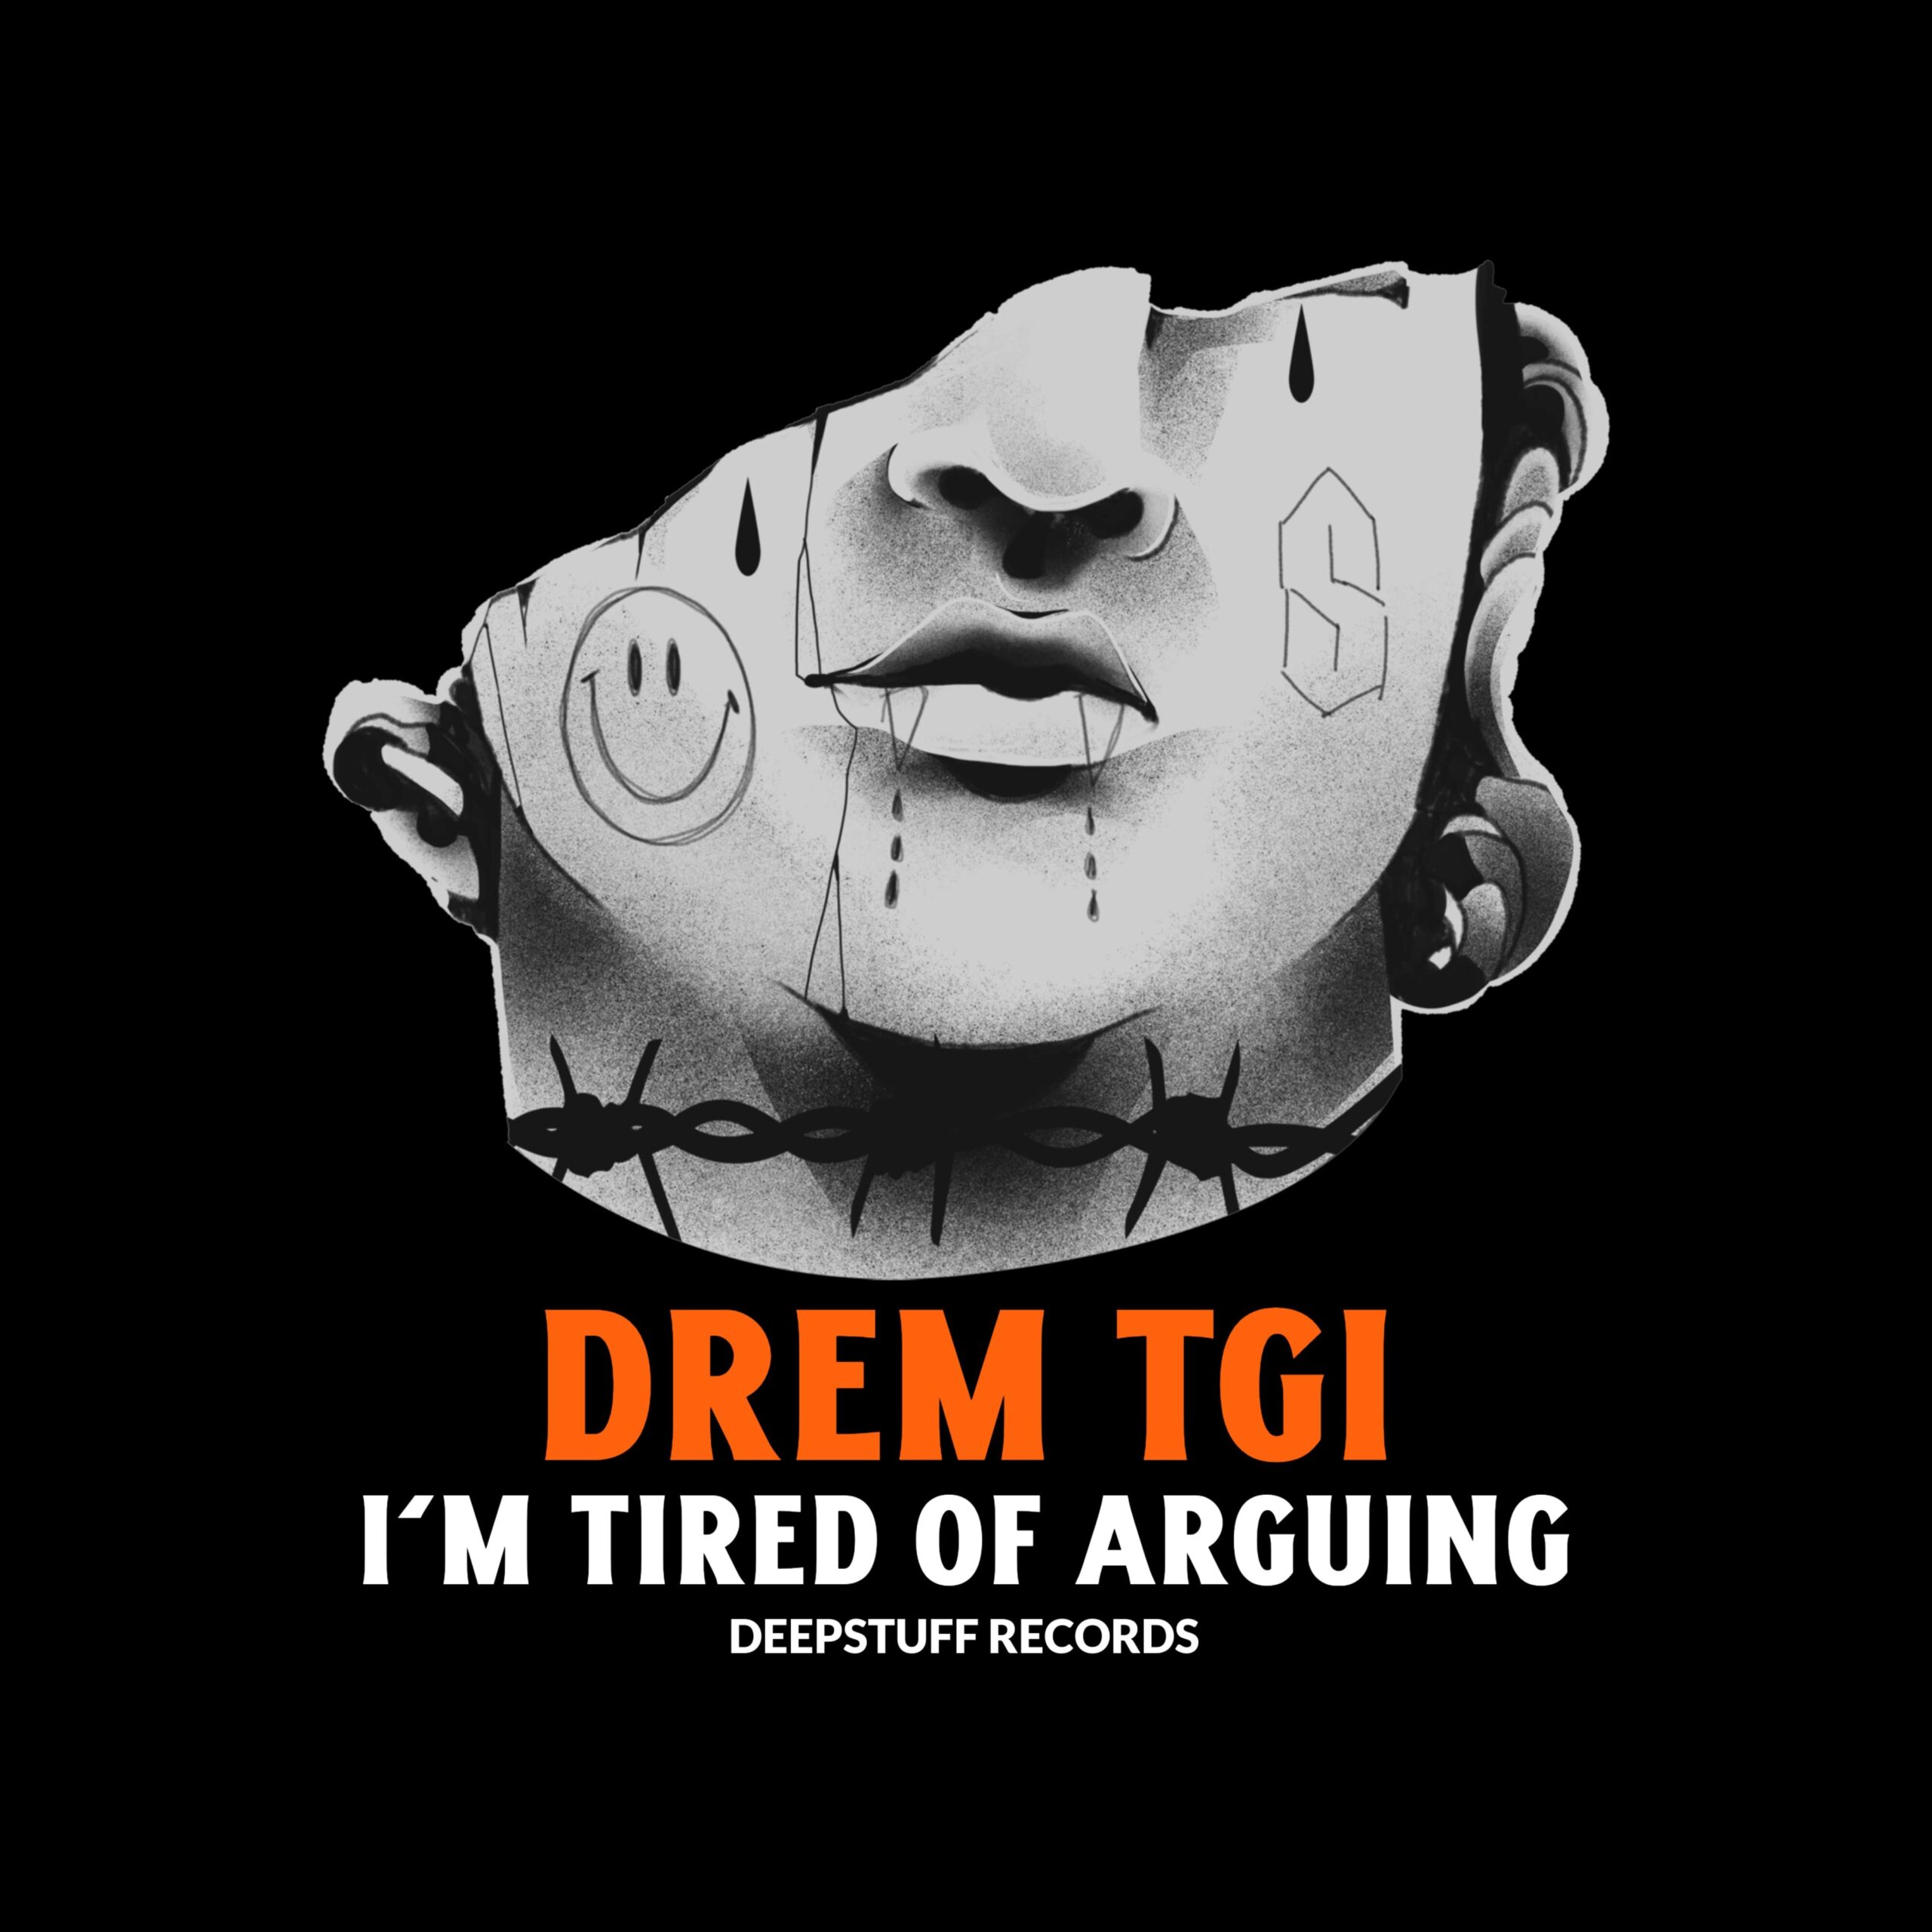 I'm tired of arguing